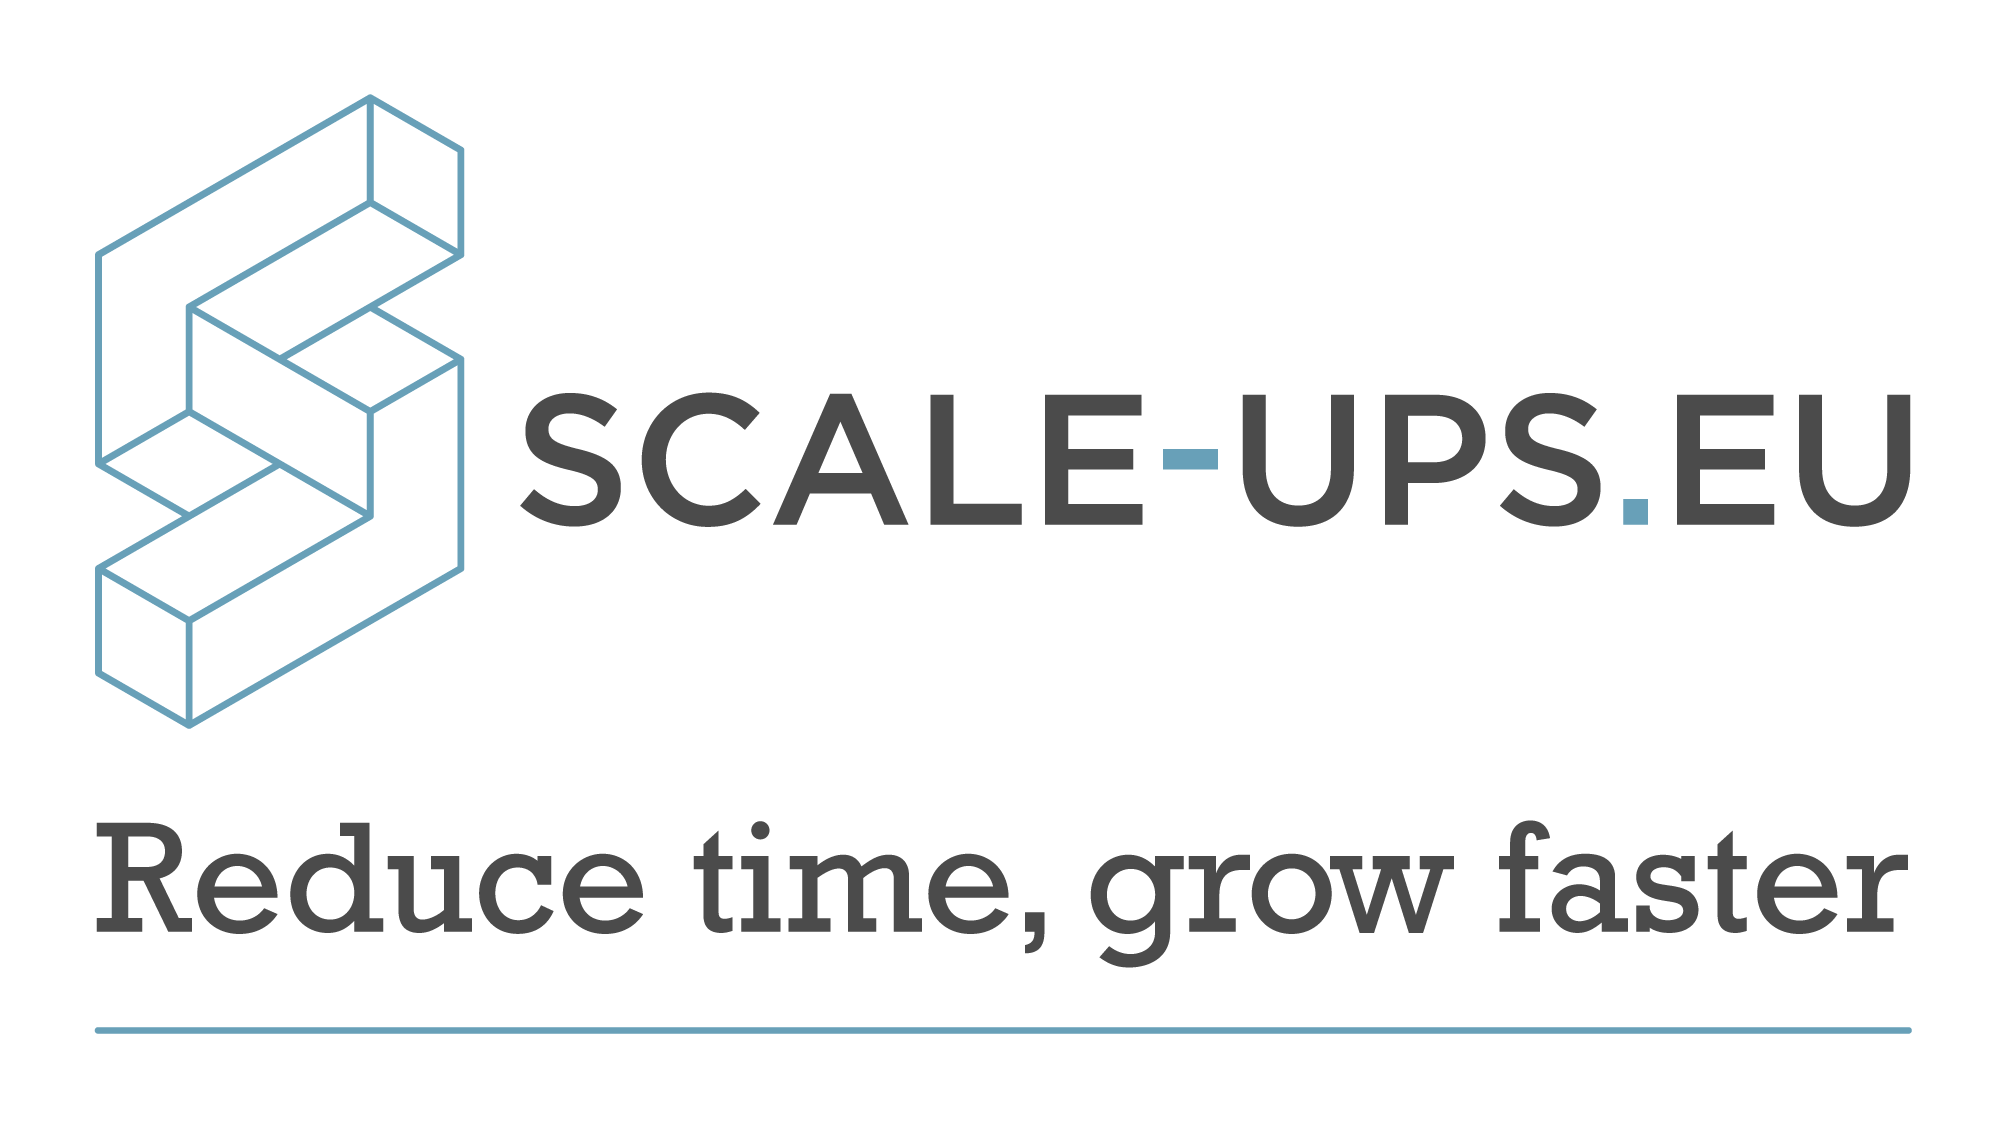 Scale-ups.eu